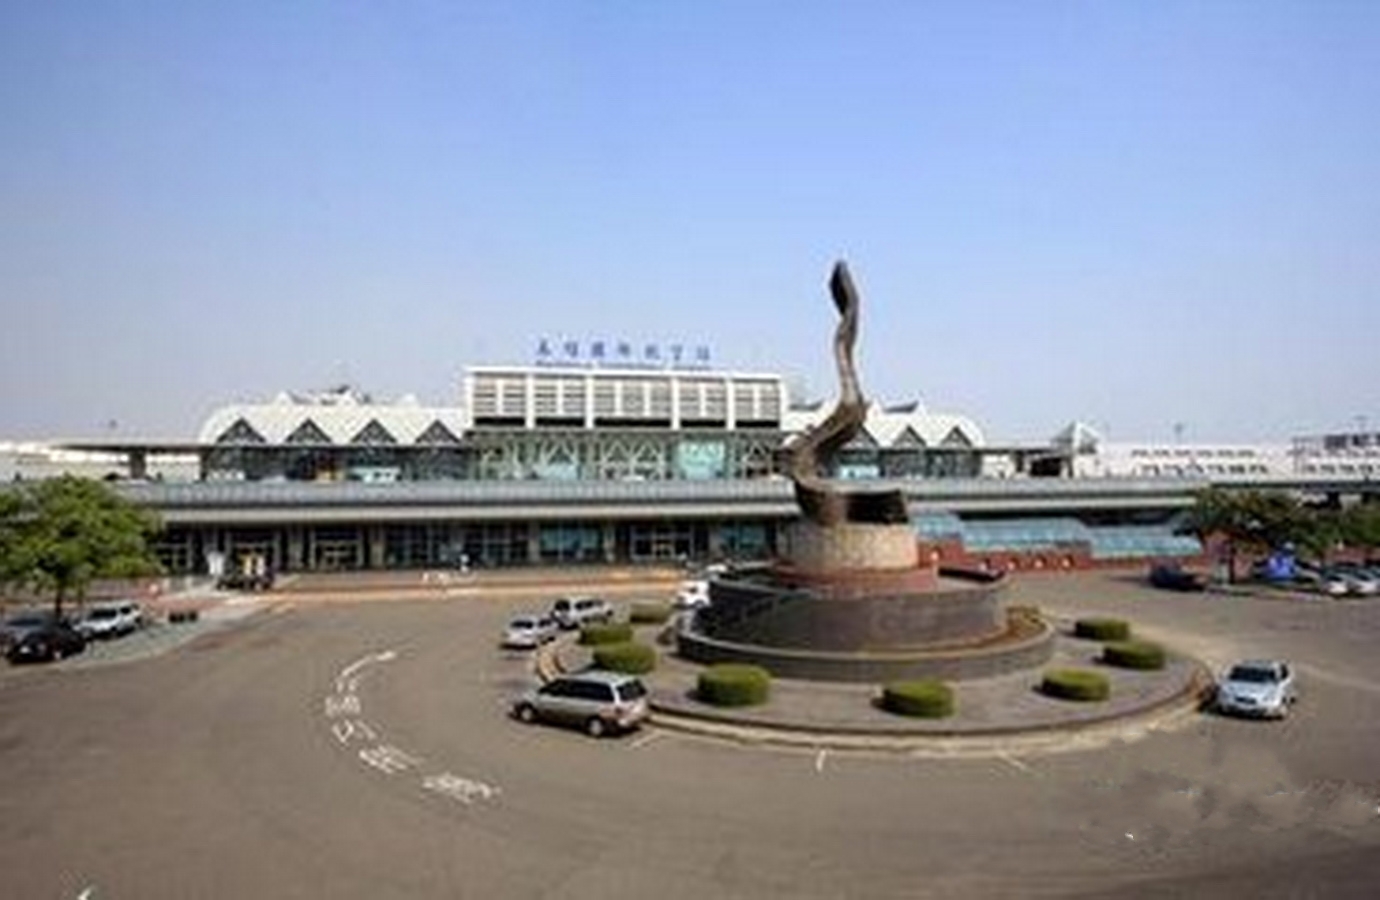 高雄国际机场高雄台湾 图库摄影片. 图片 包括有 航空, 生活, 终端, 繁忙, 旅游业, 高雄, 生活方式 - 88823722